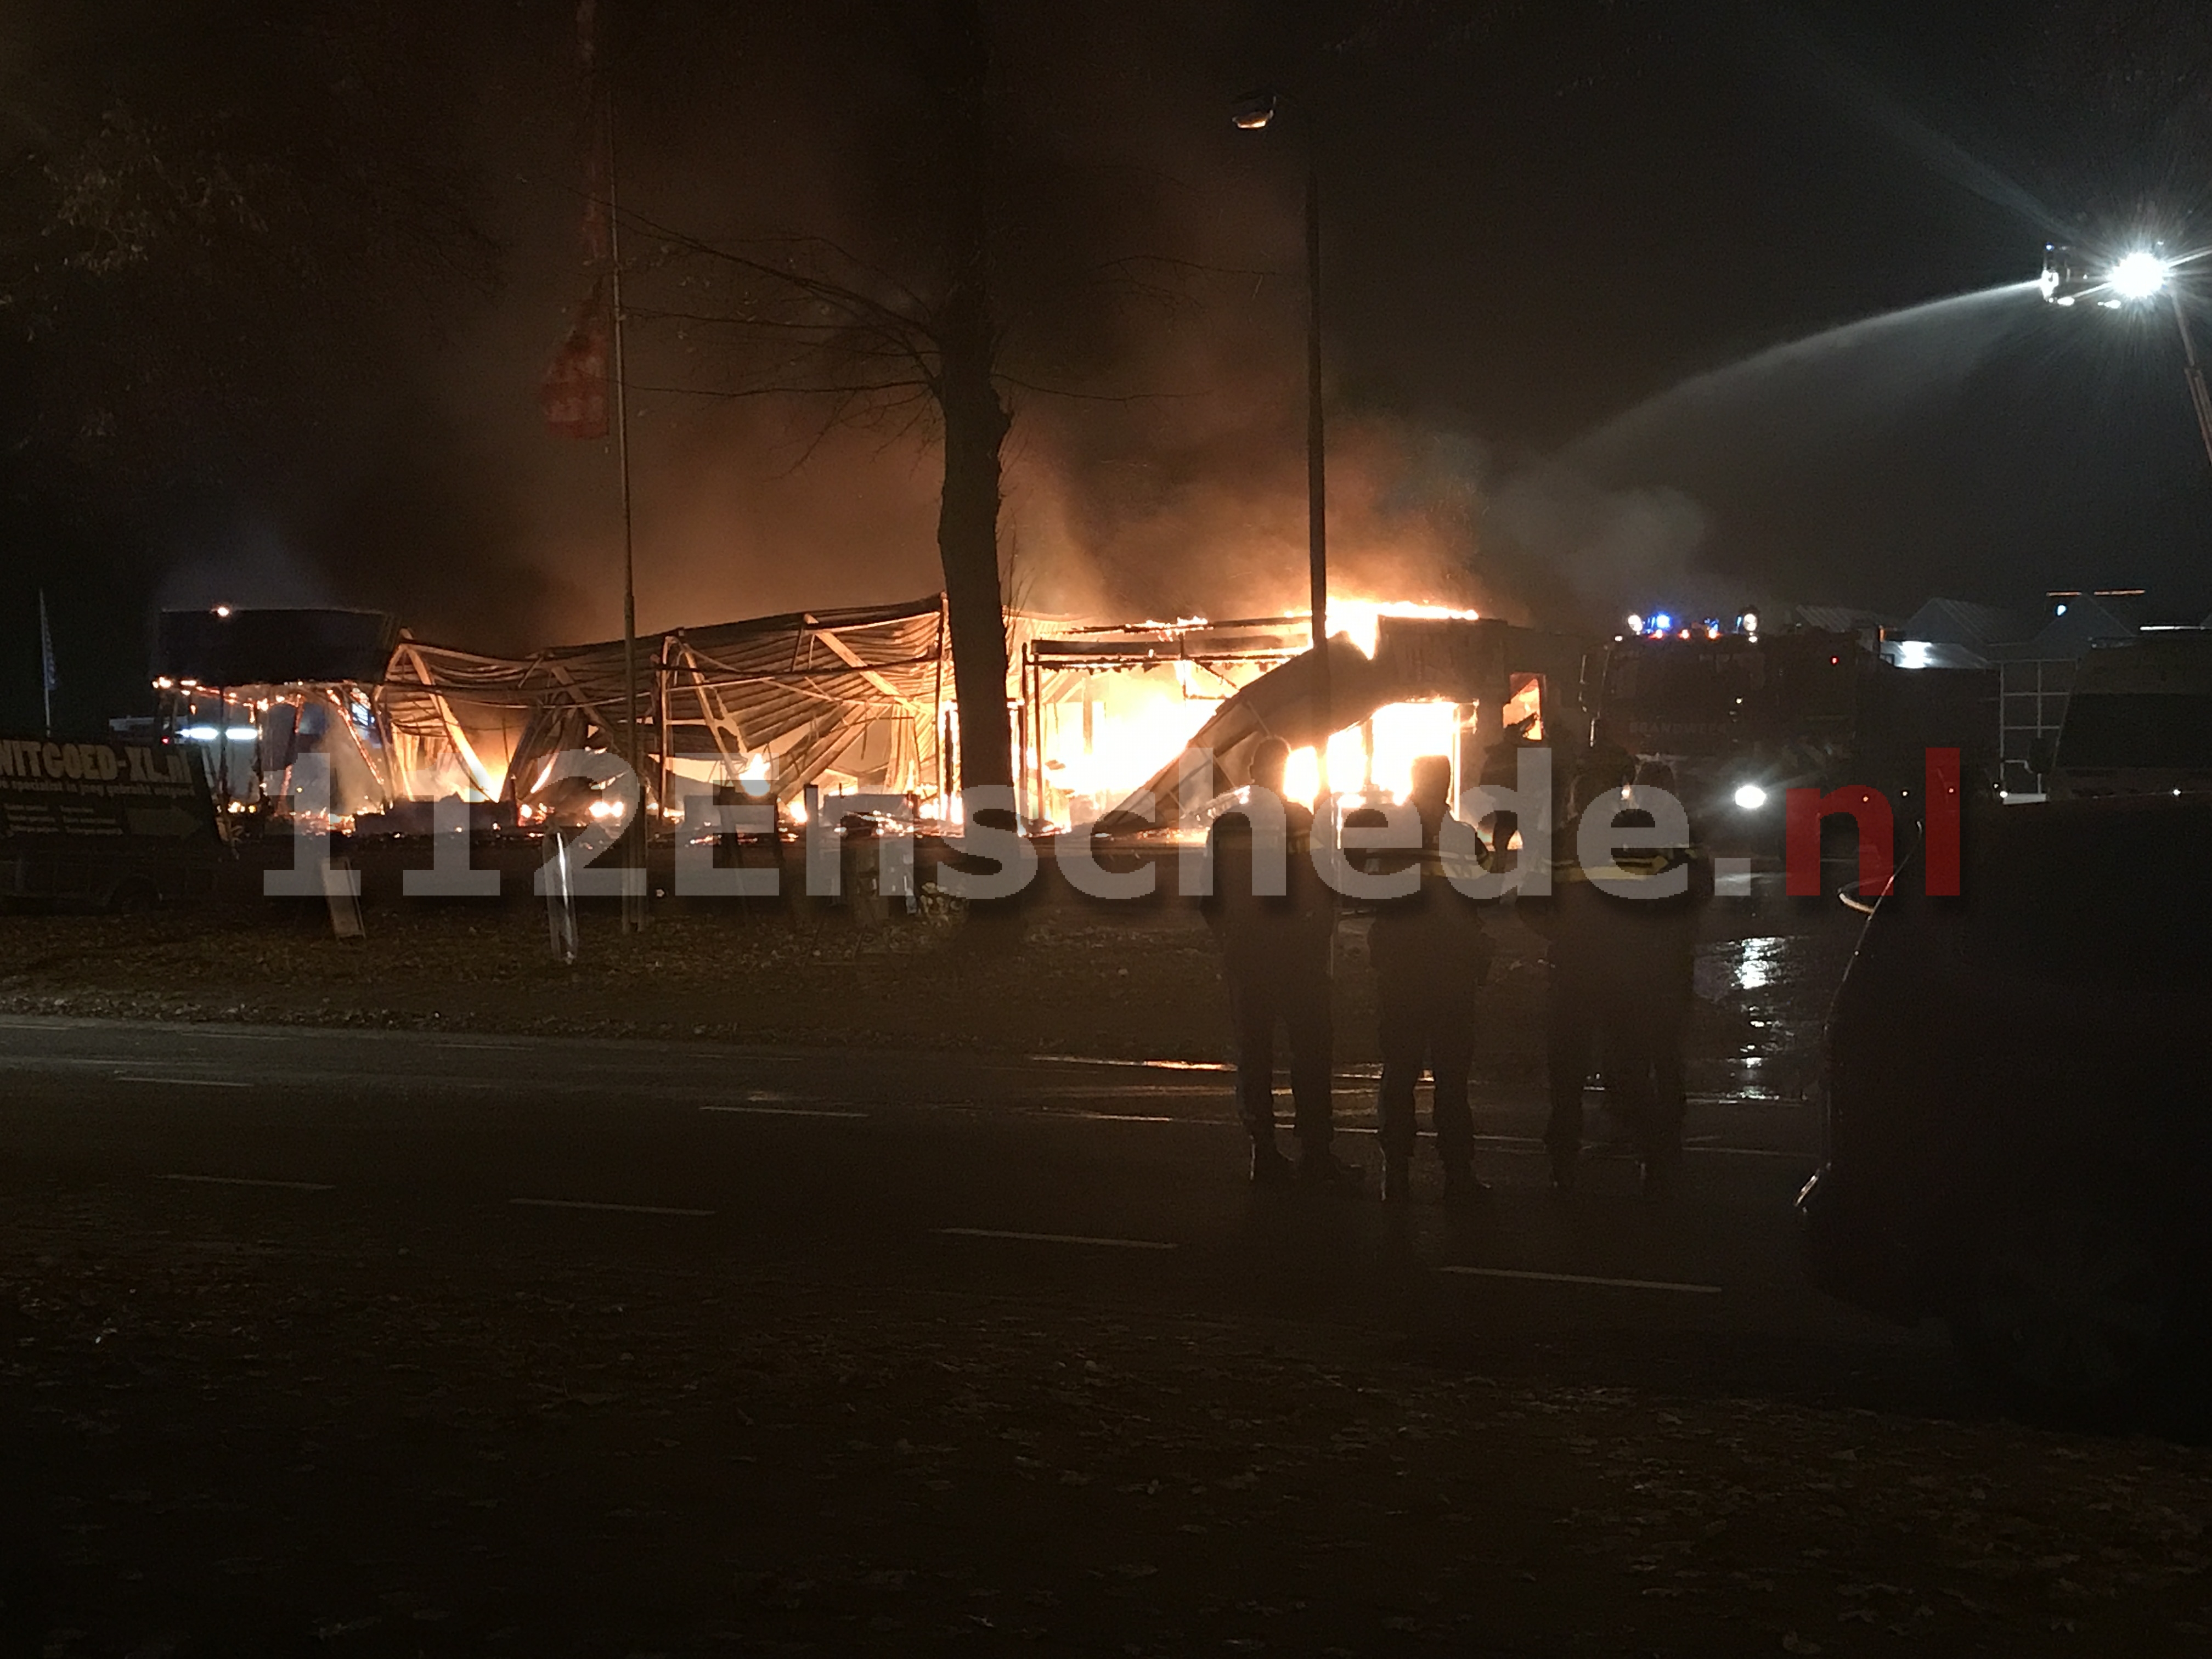 UPDATE: Grote brand bij bedrijf in Enschede; brandweer haalt wensambulances uit het pand